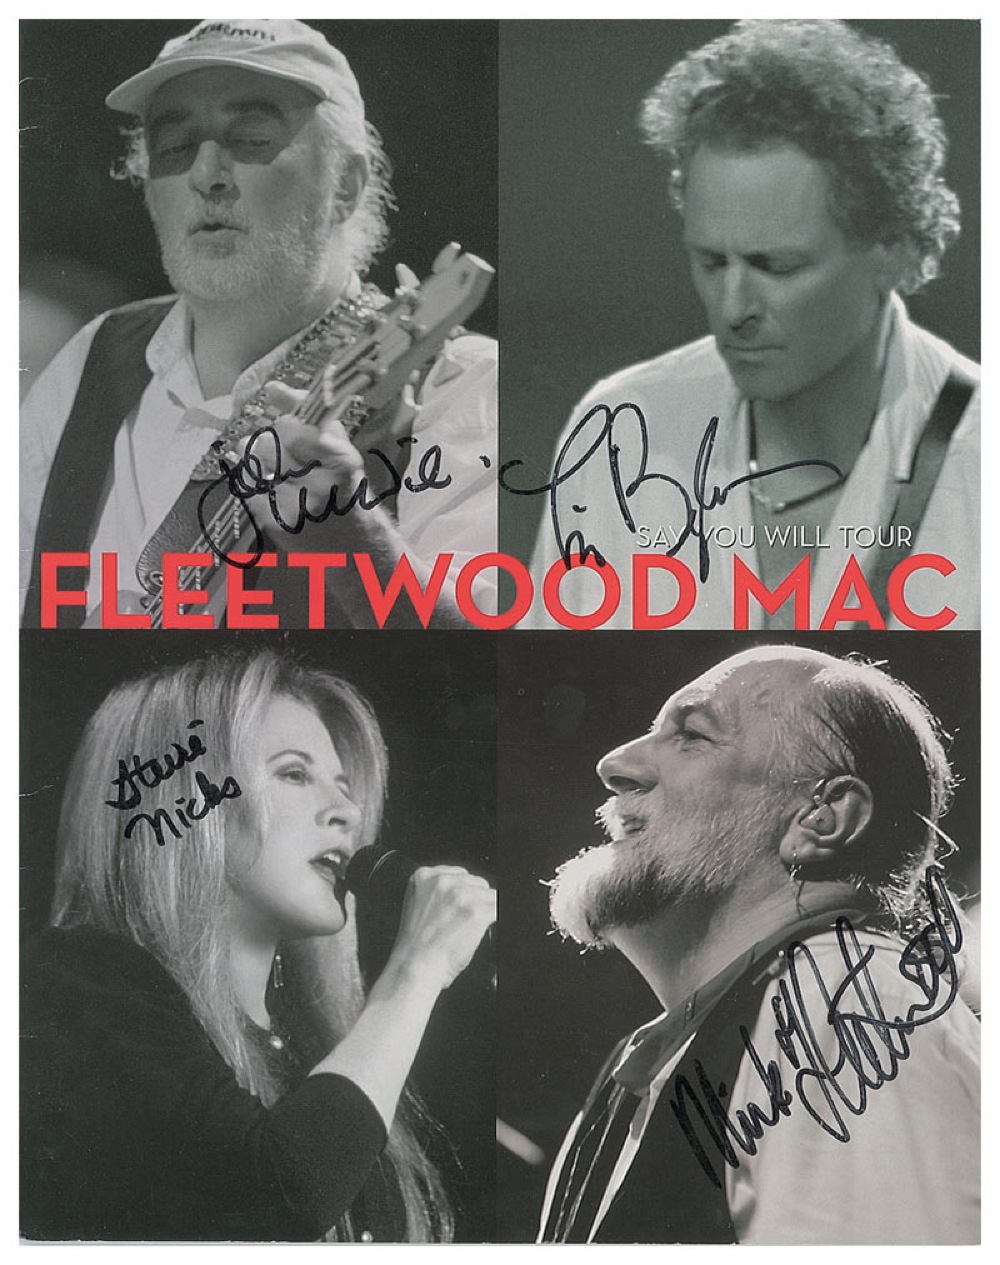 Lot #935 Fleetwood Mac